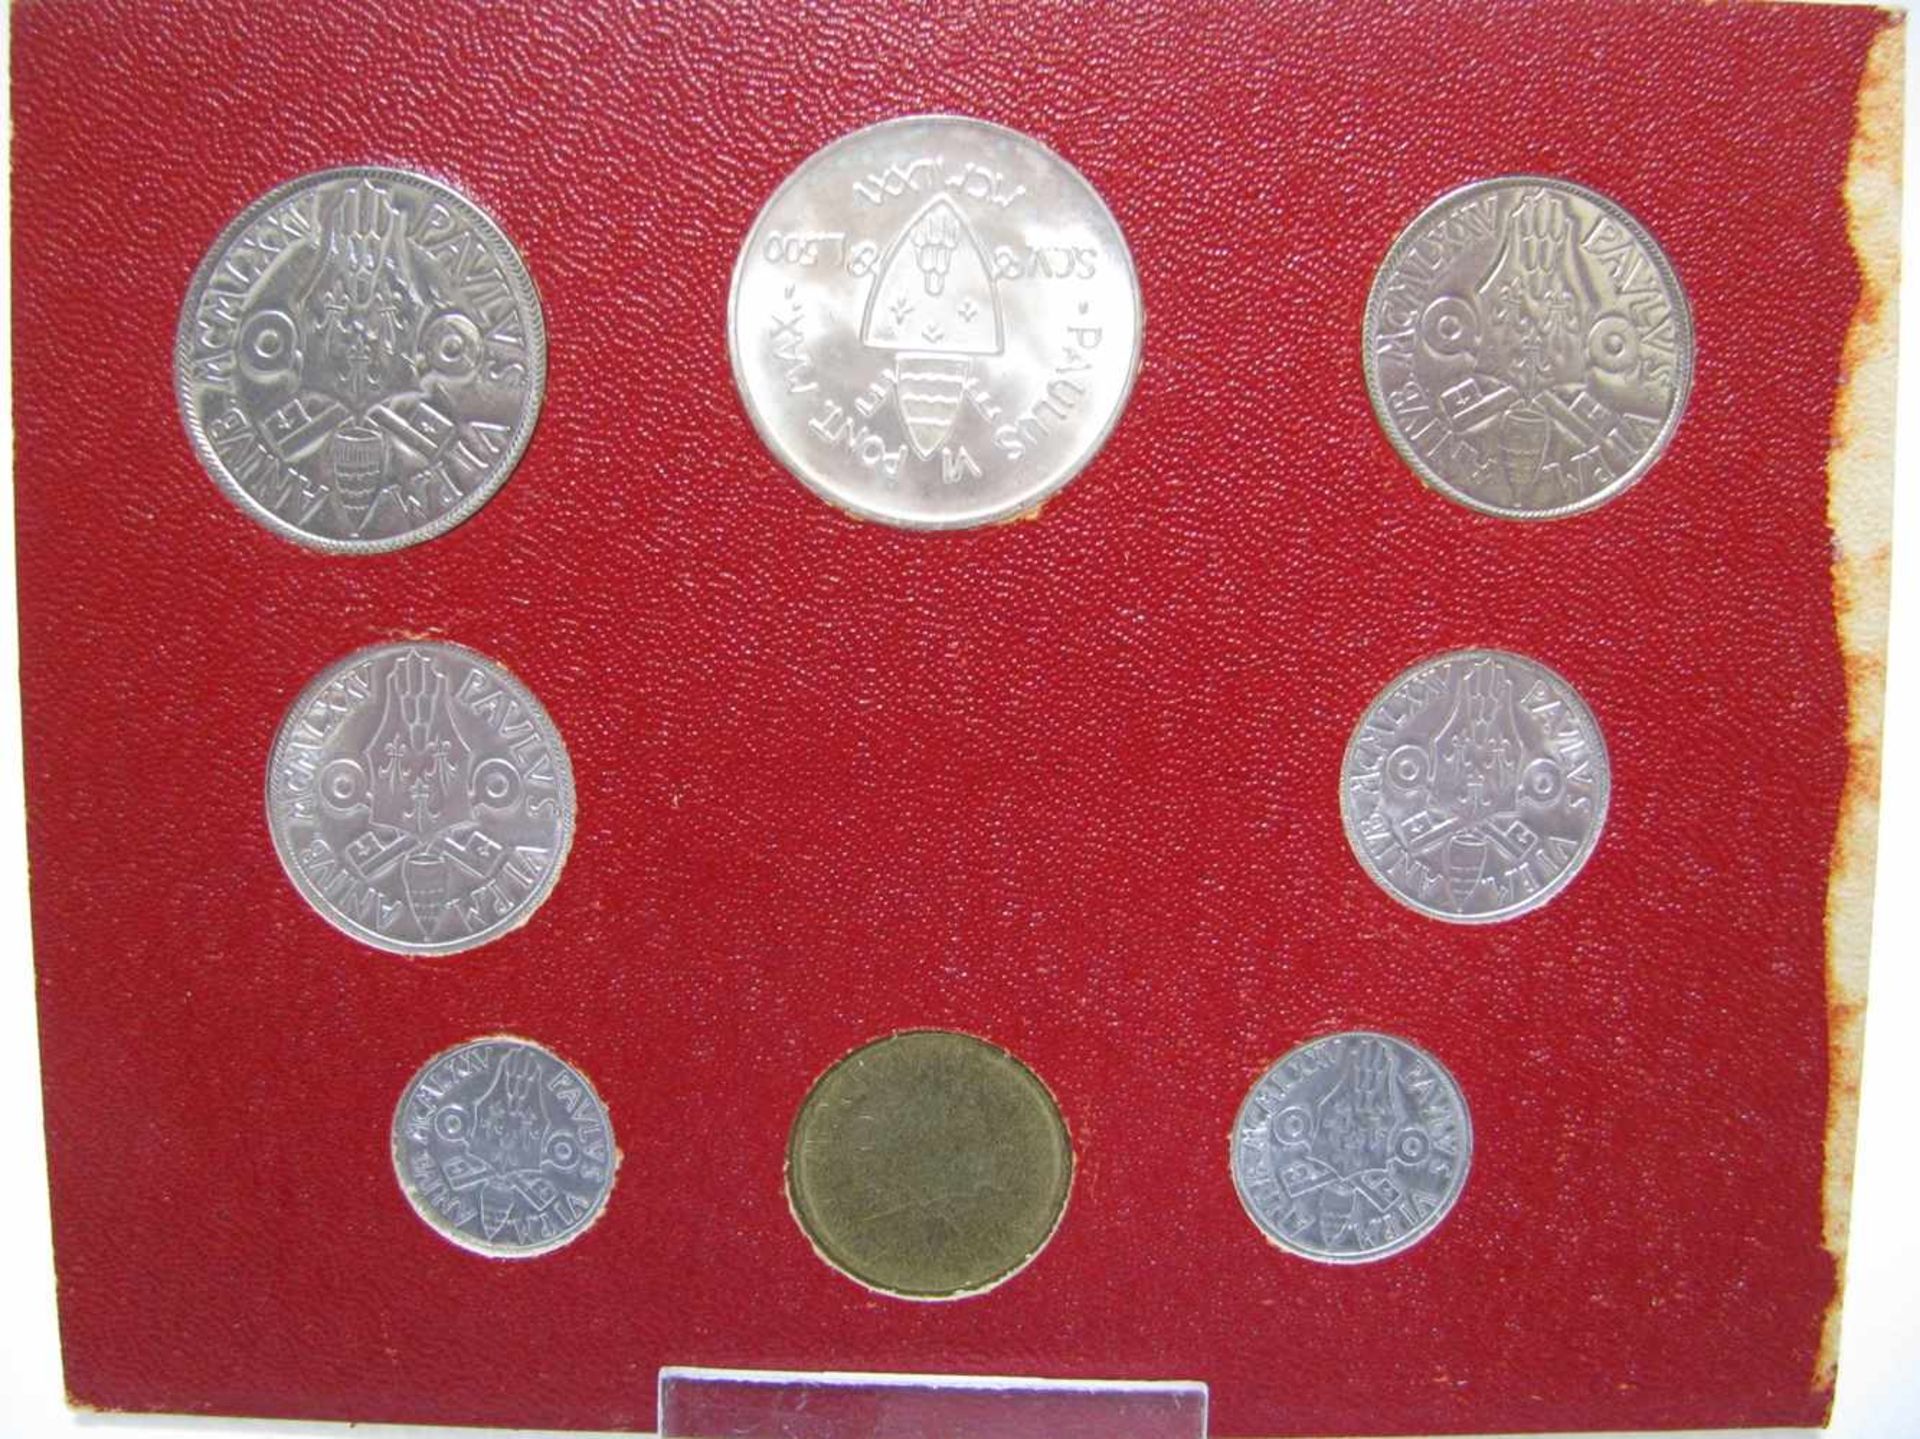 Münzsatz mit 8 Münzen, Vatikan, 1975. - Bild 2 aus 2